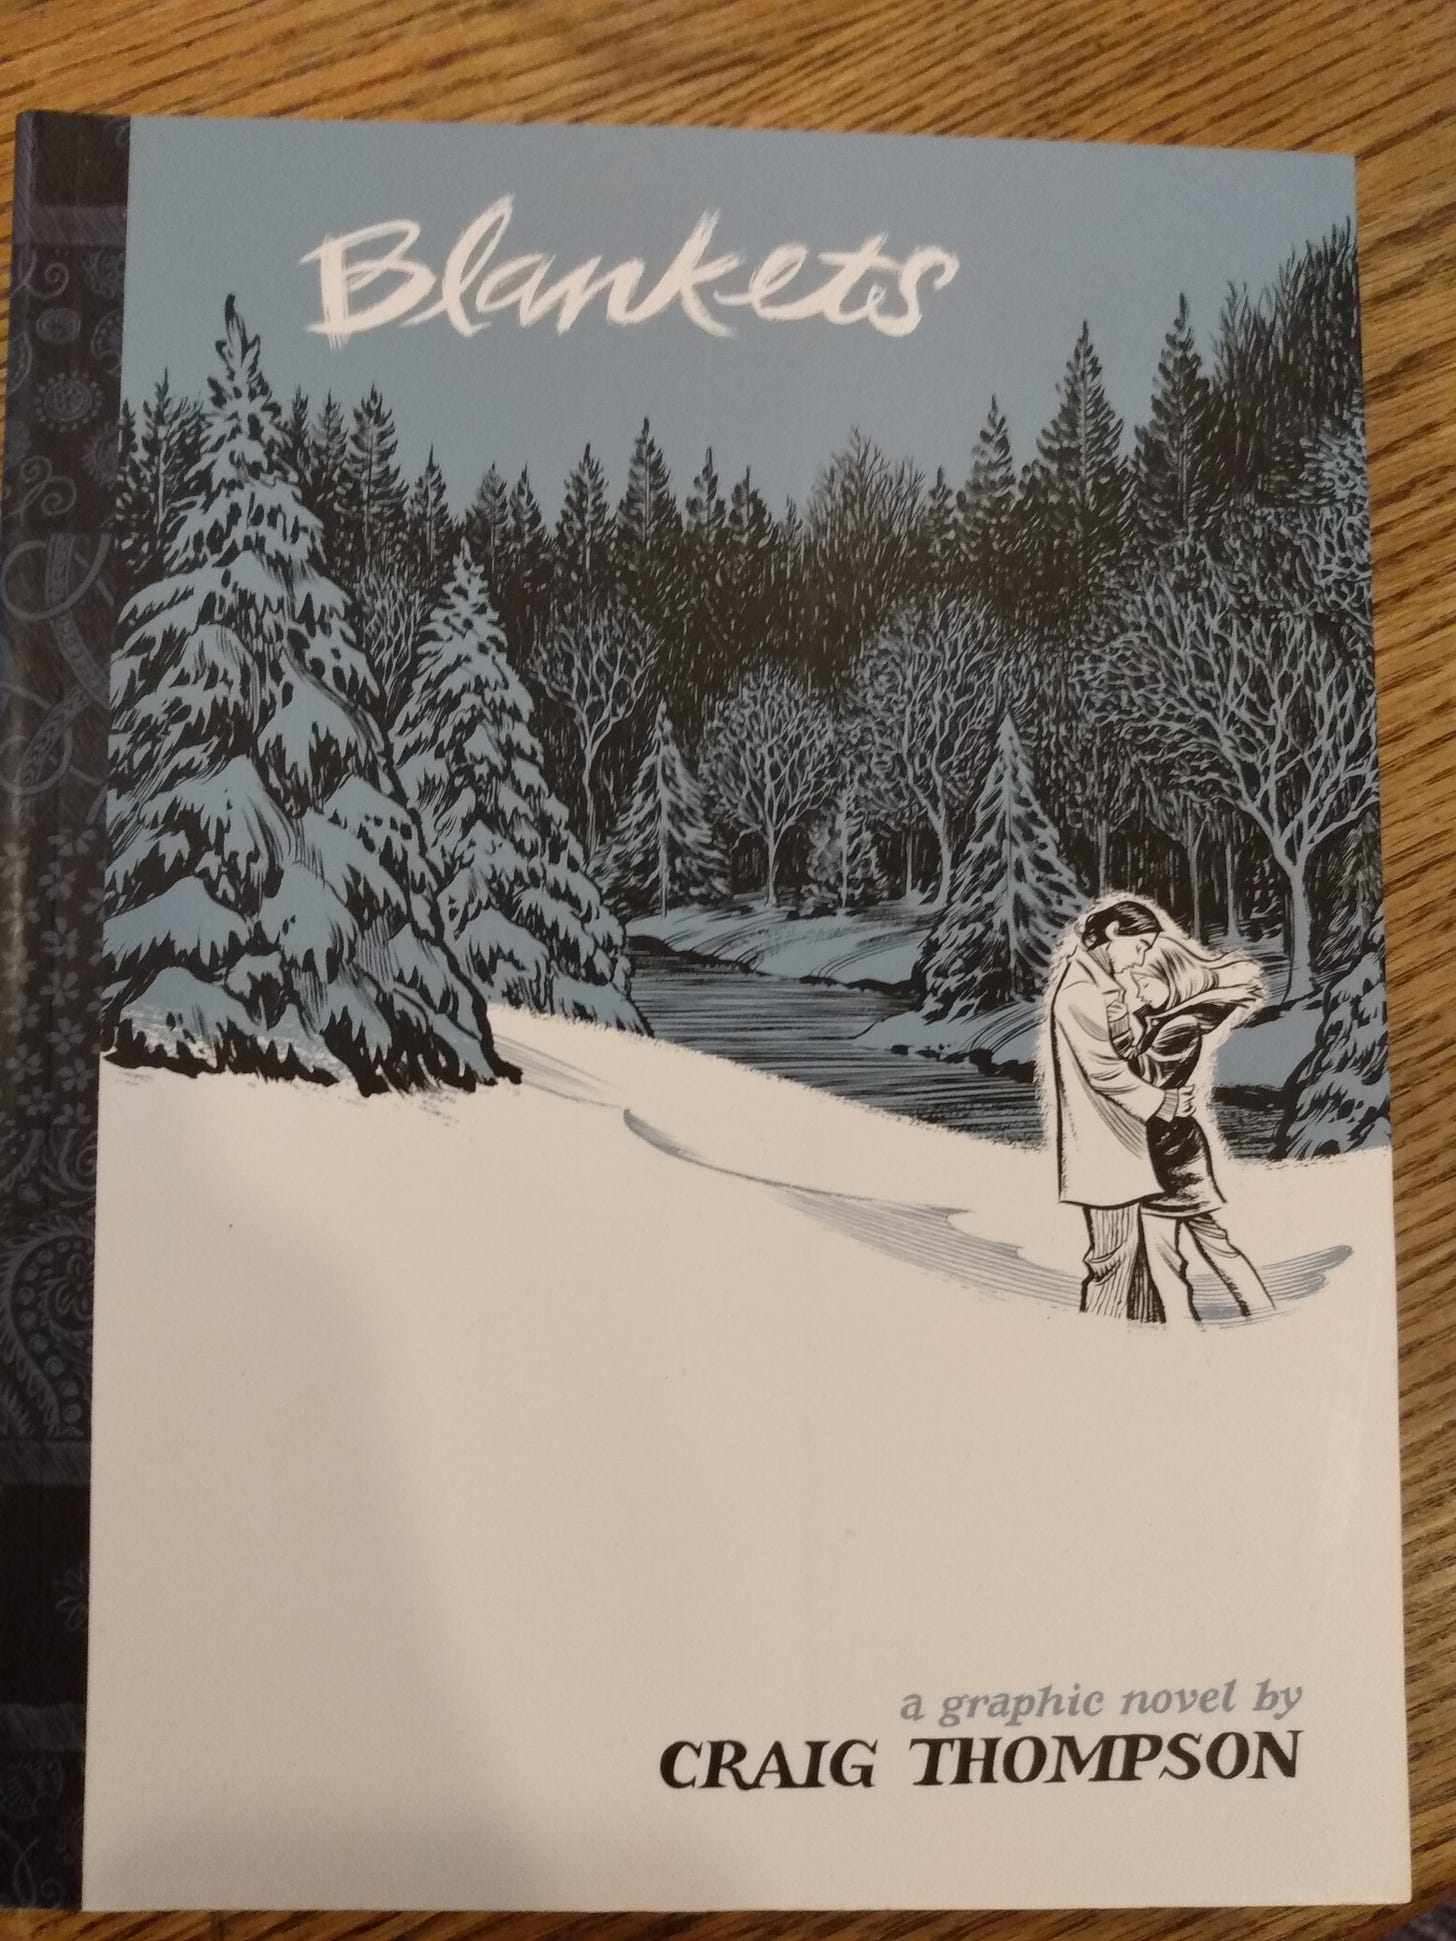 Portada de "Blankets", una novela gráfica de Craig Thompson. En la portada se ve a dos muchachos abrazados en medio de la nieve, con un fondo de bosque. 